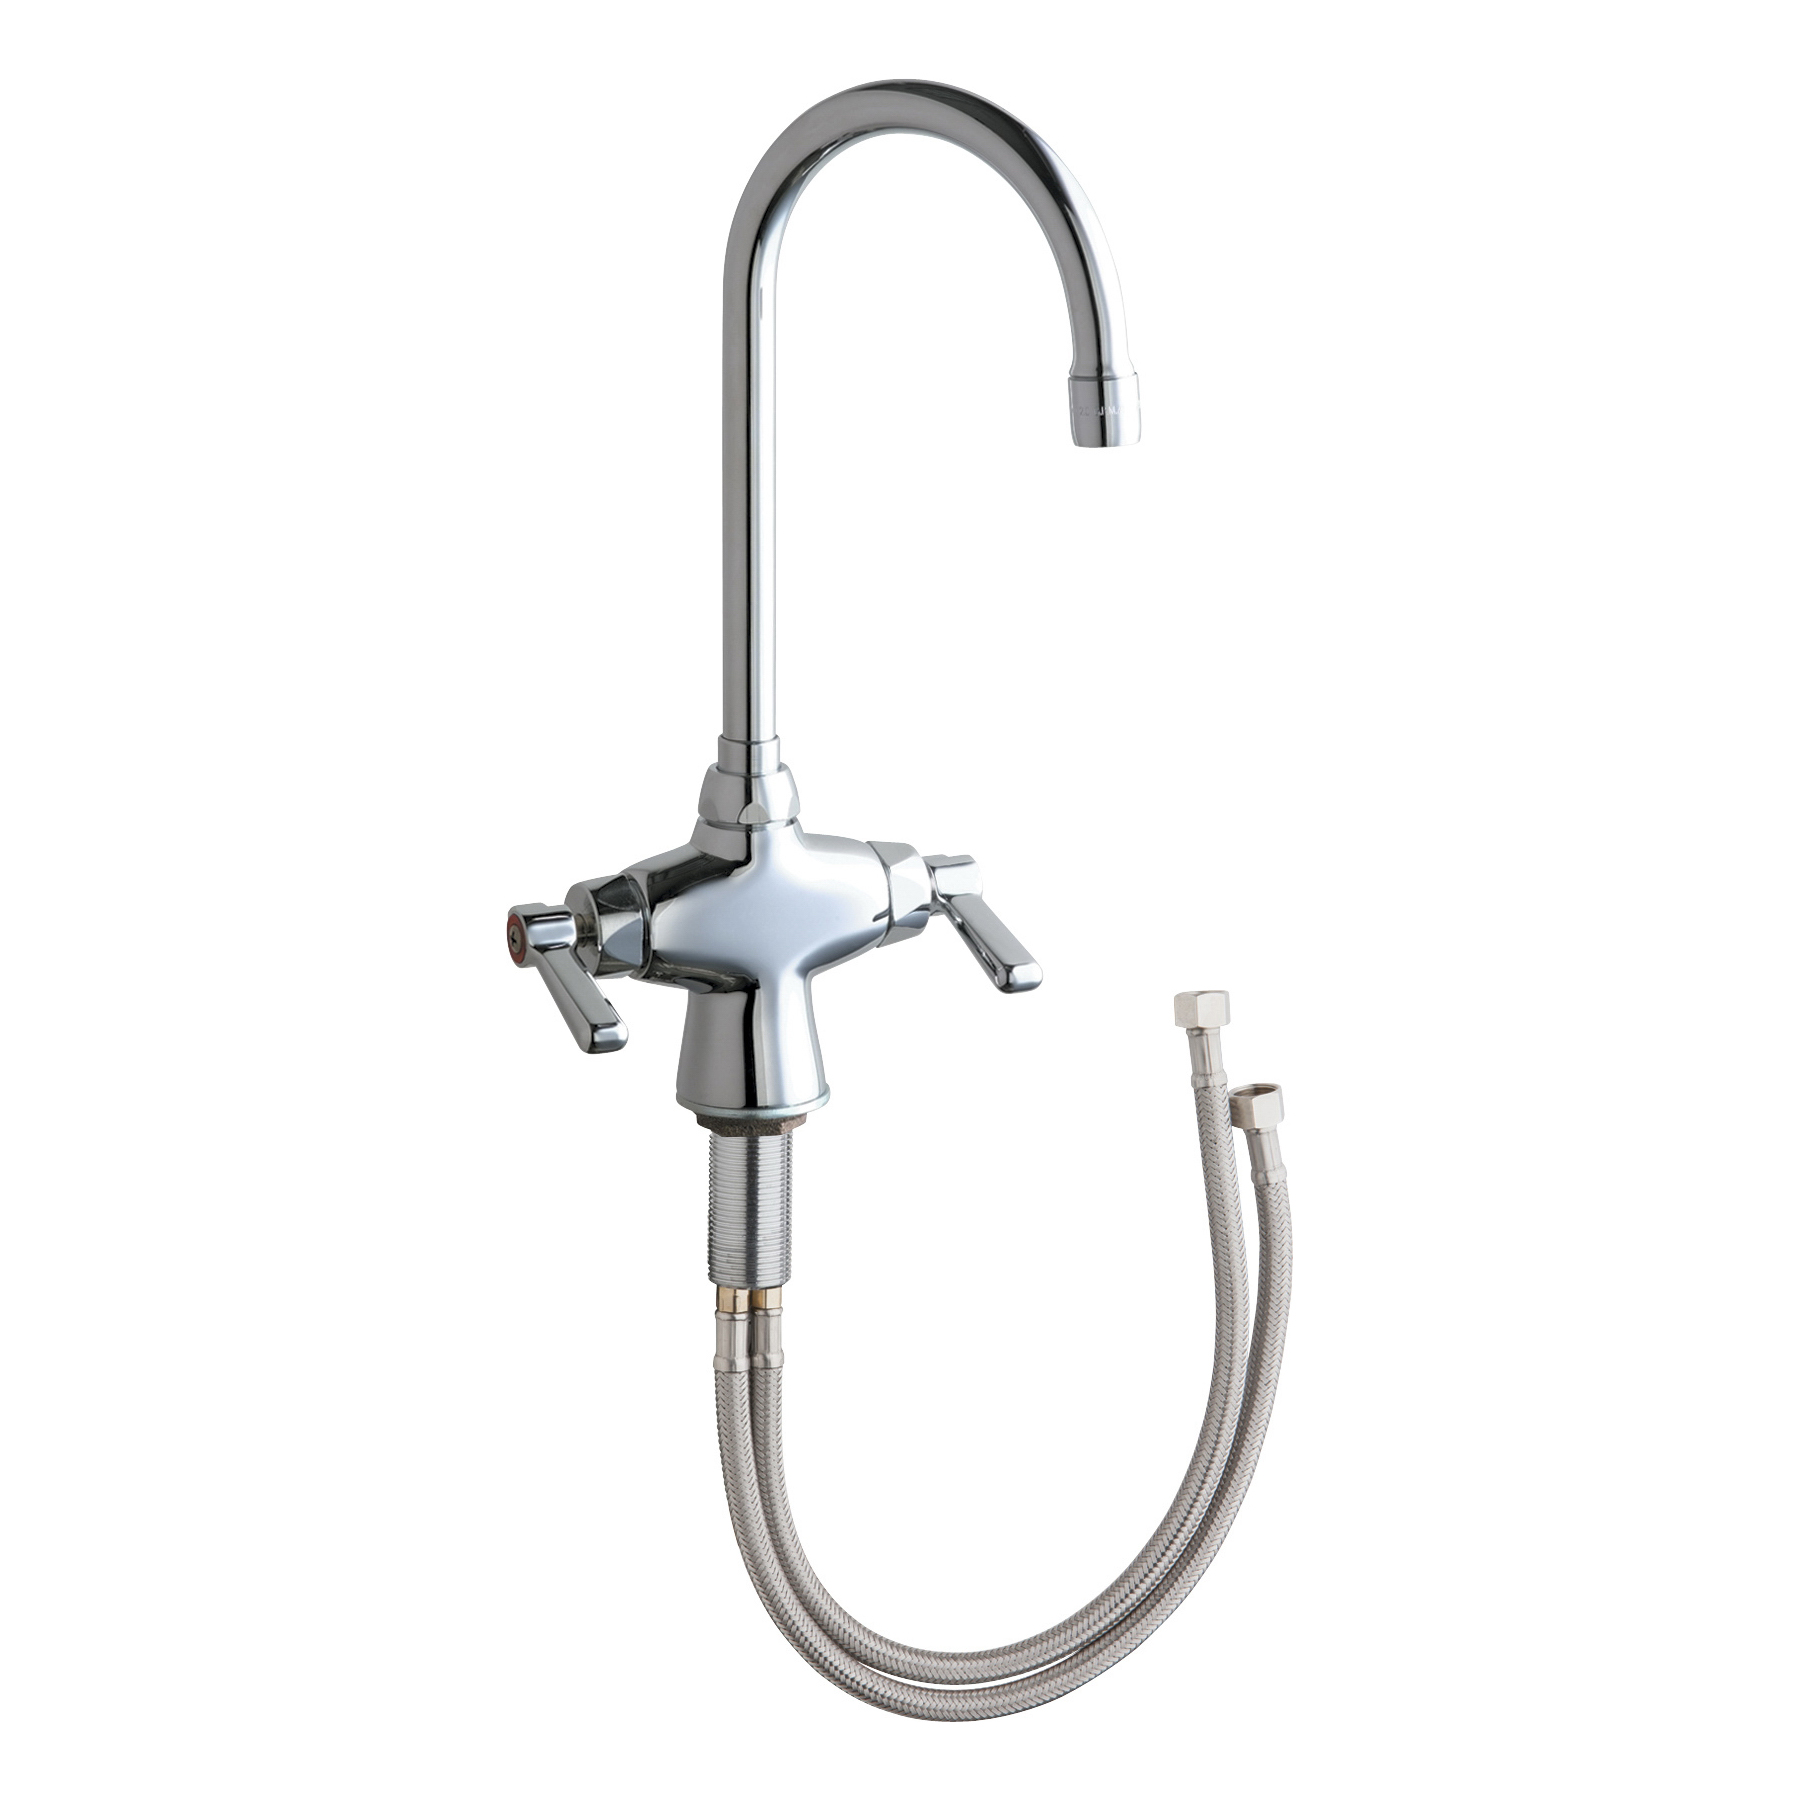 Chicago Faucet® 50-E35ABCP 50 Series Kitchen Sink Faucet, Commercial, 1.5 gpm Flow Rate, Gooseneck Spout, Polished Chrome, 2 Handles